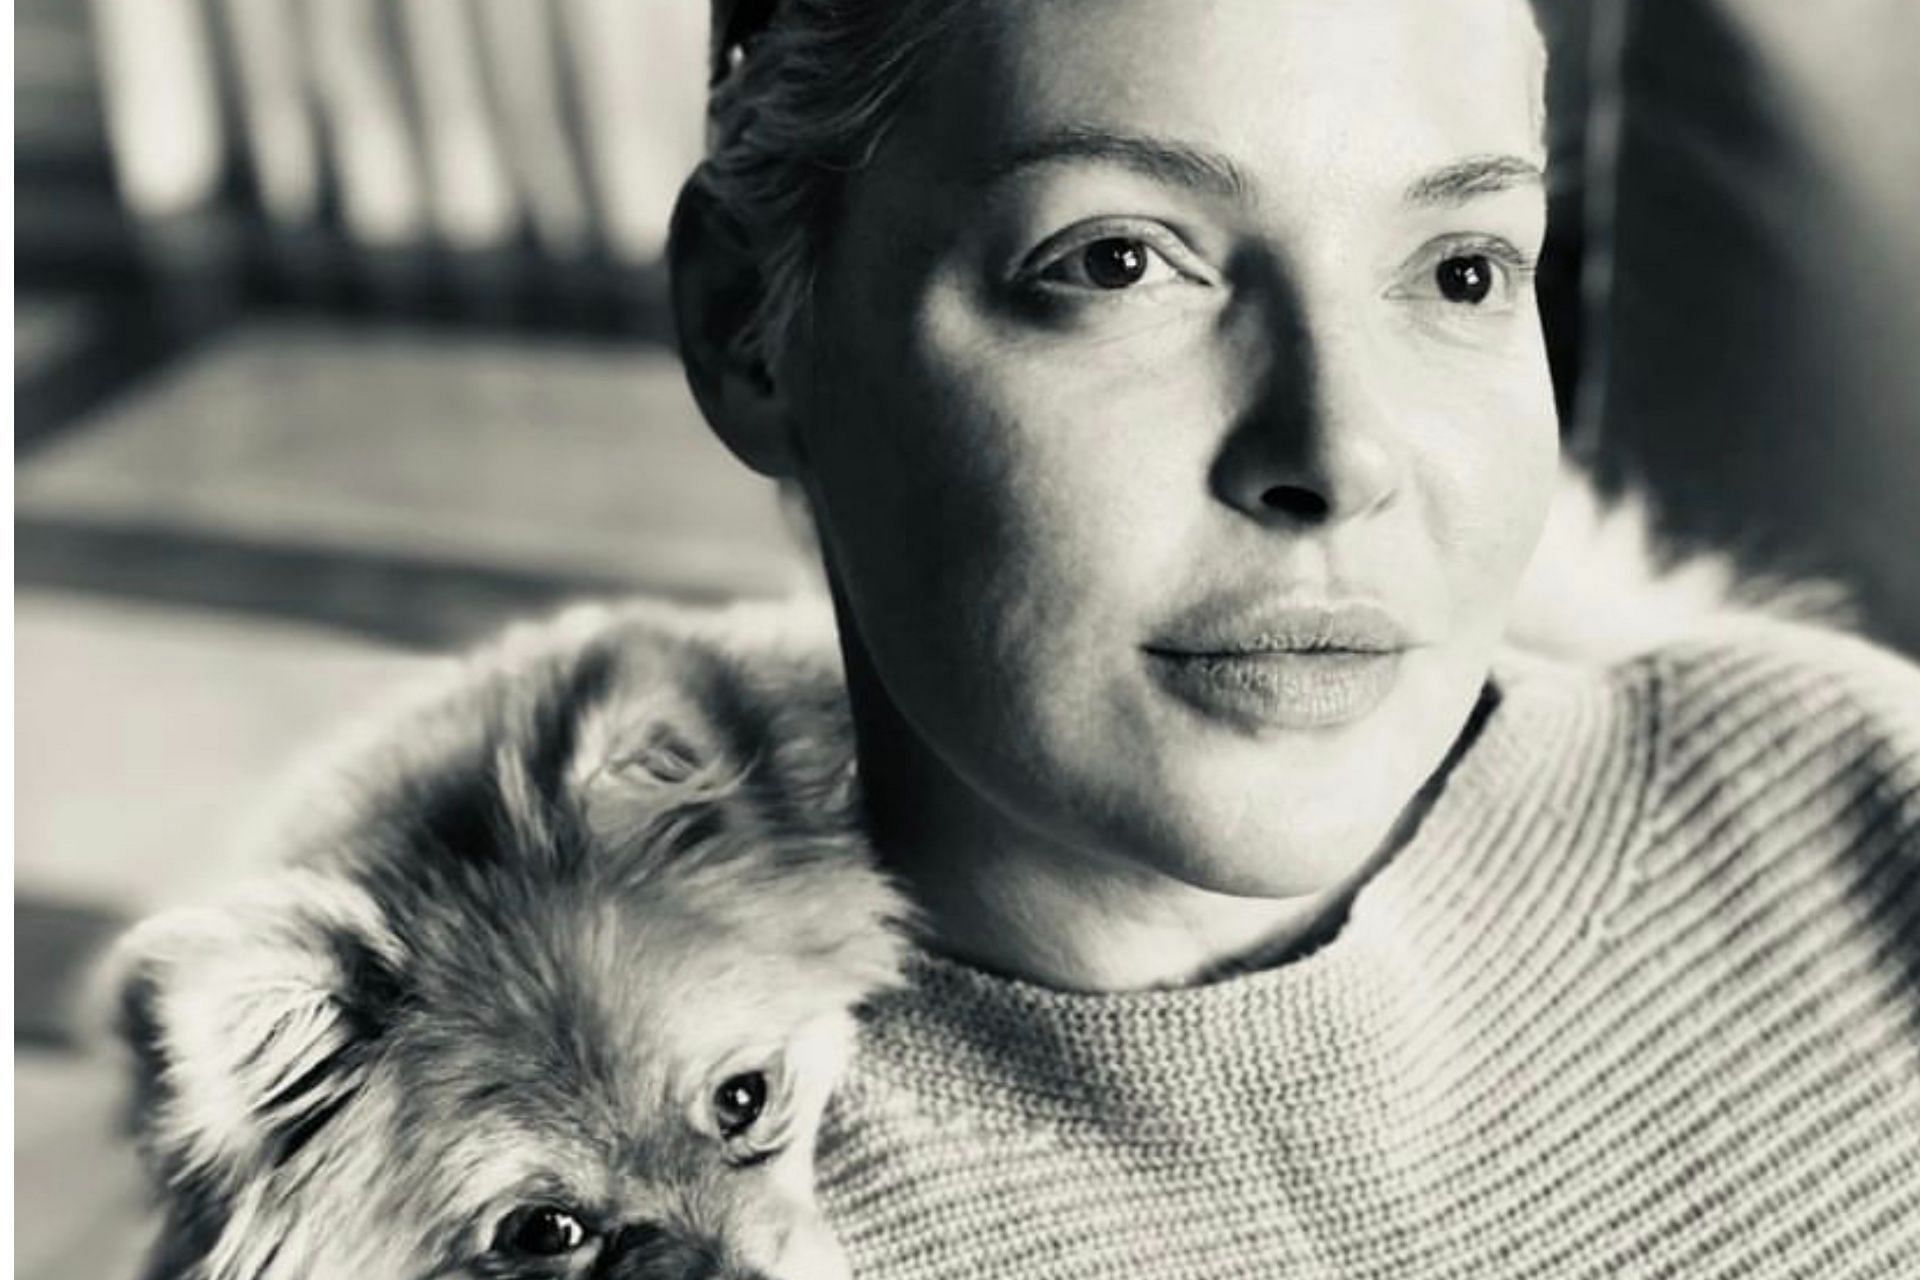 Heigl with her pet (Photo via Instagram/katherineheigl)